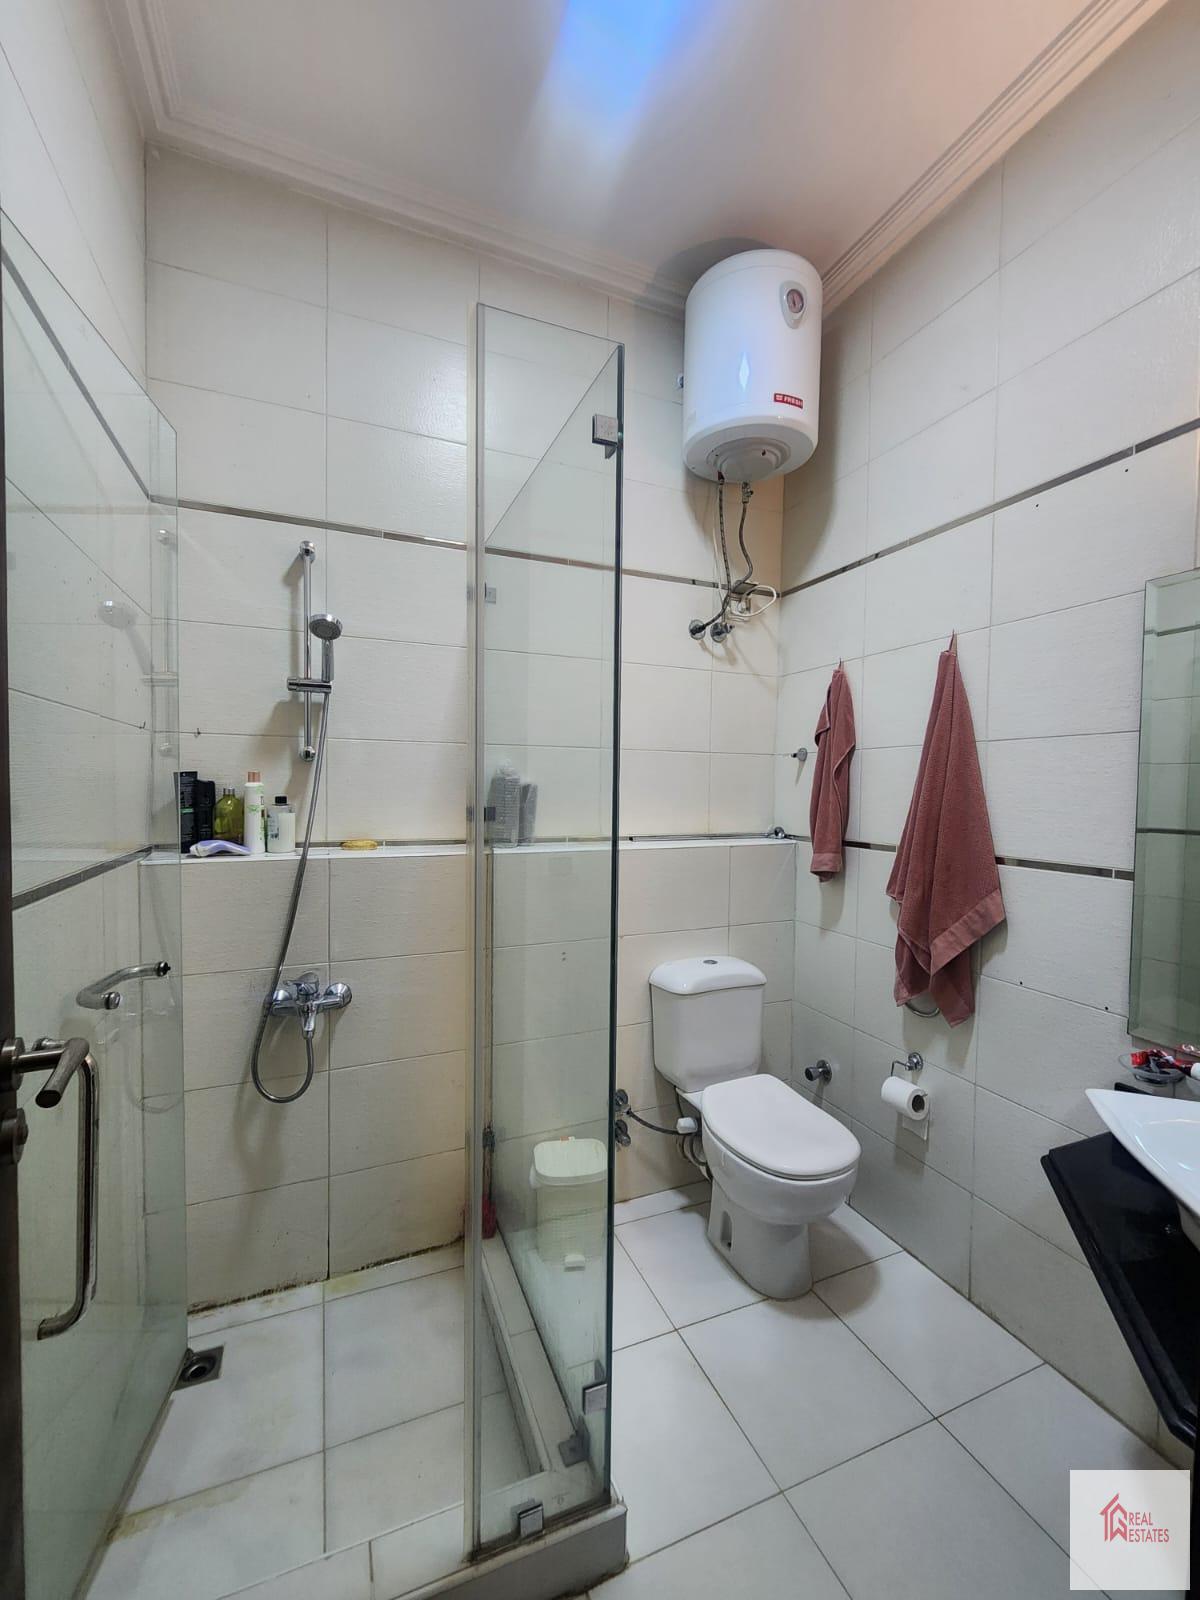 Apartamentos en alquiler modernos amueblados de 2 habitaciones y 2 baños Madi Sarayate